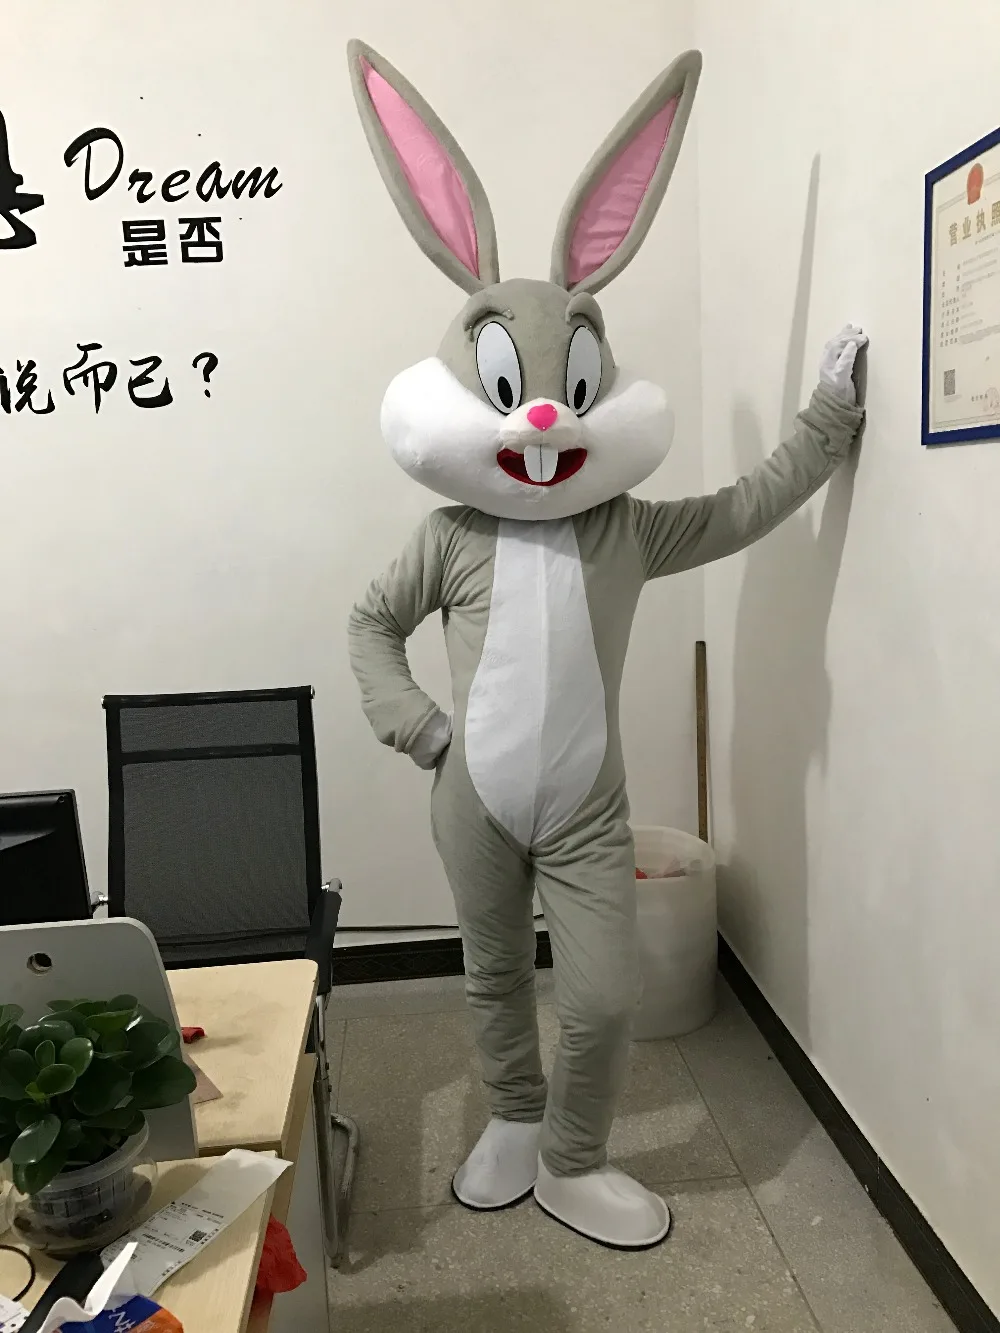 Sprzedawaj się jak gorący profesjonalny zając wielkanocny kostiumy maskotki królik i królik Bugs dorosły Halloween świąteczne przyjęcie urodzinowe